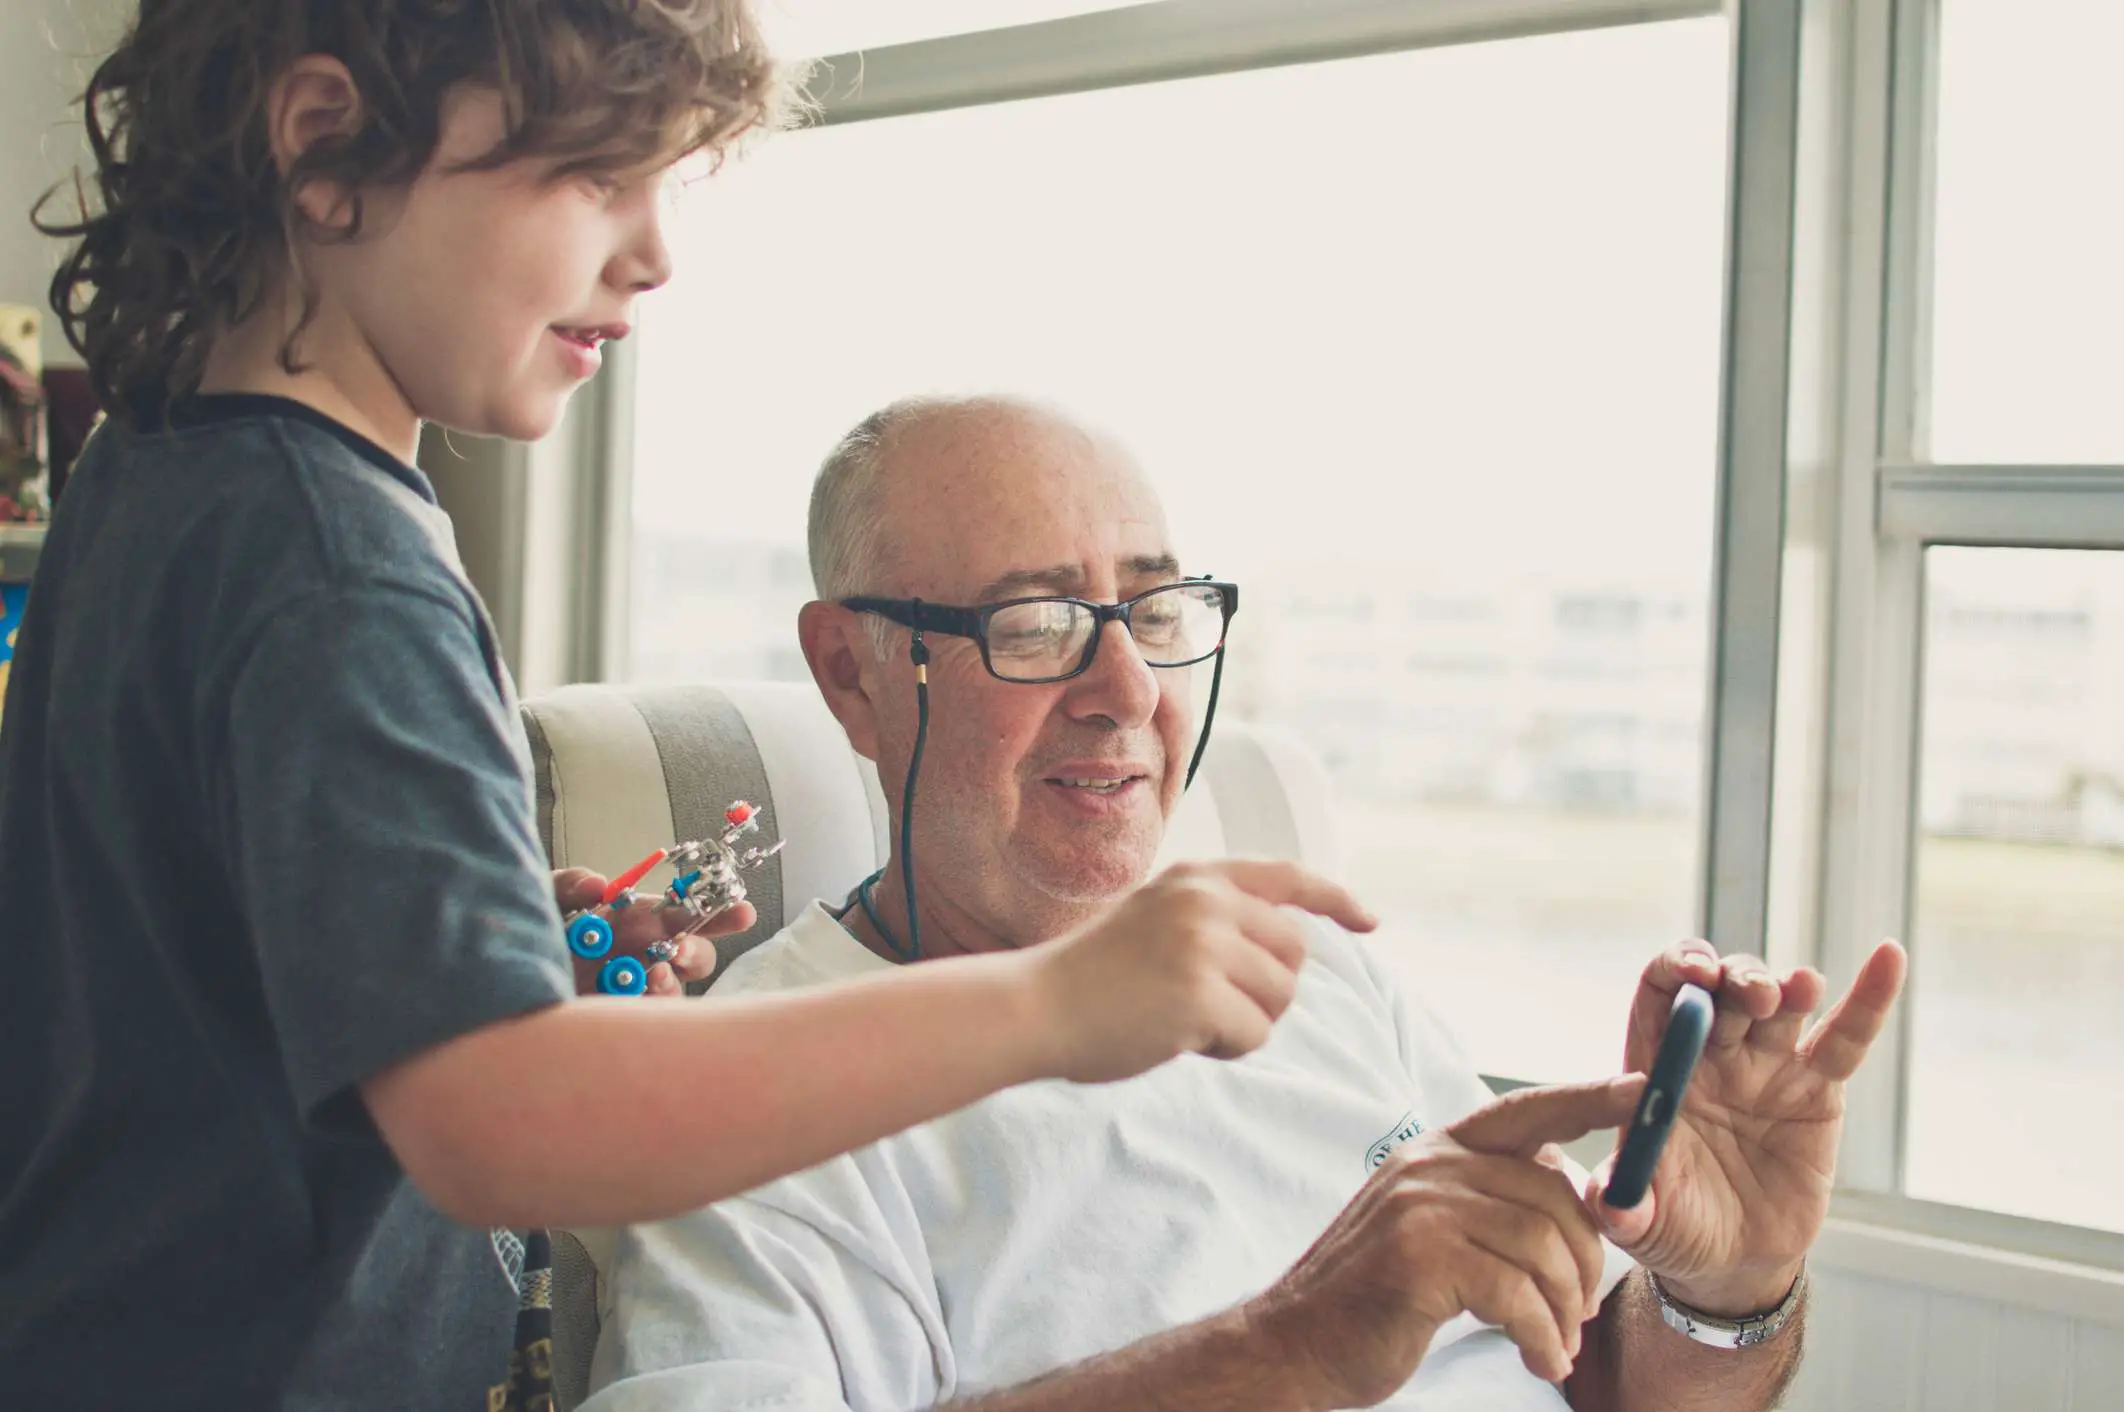 Um avô e um neto interagindo com um smartphone enquanto a criança segura um pequeno robô.